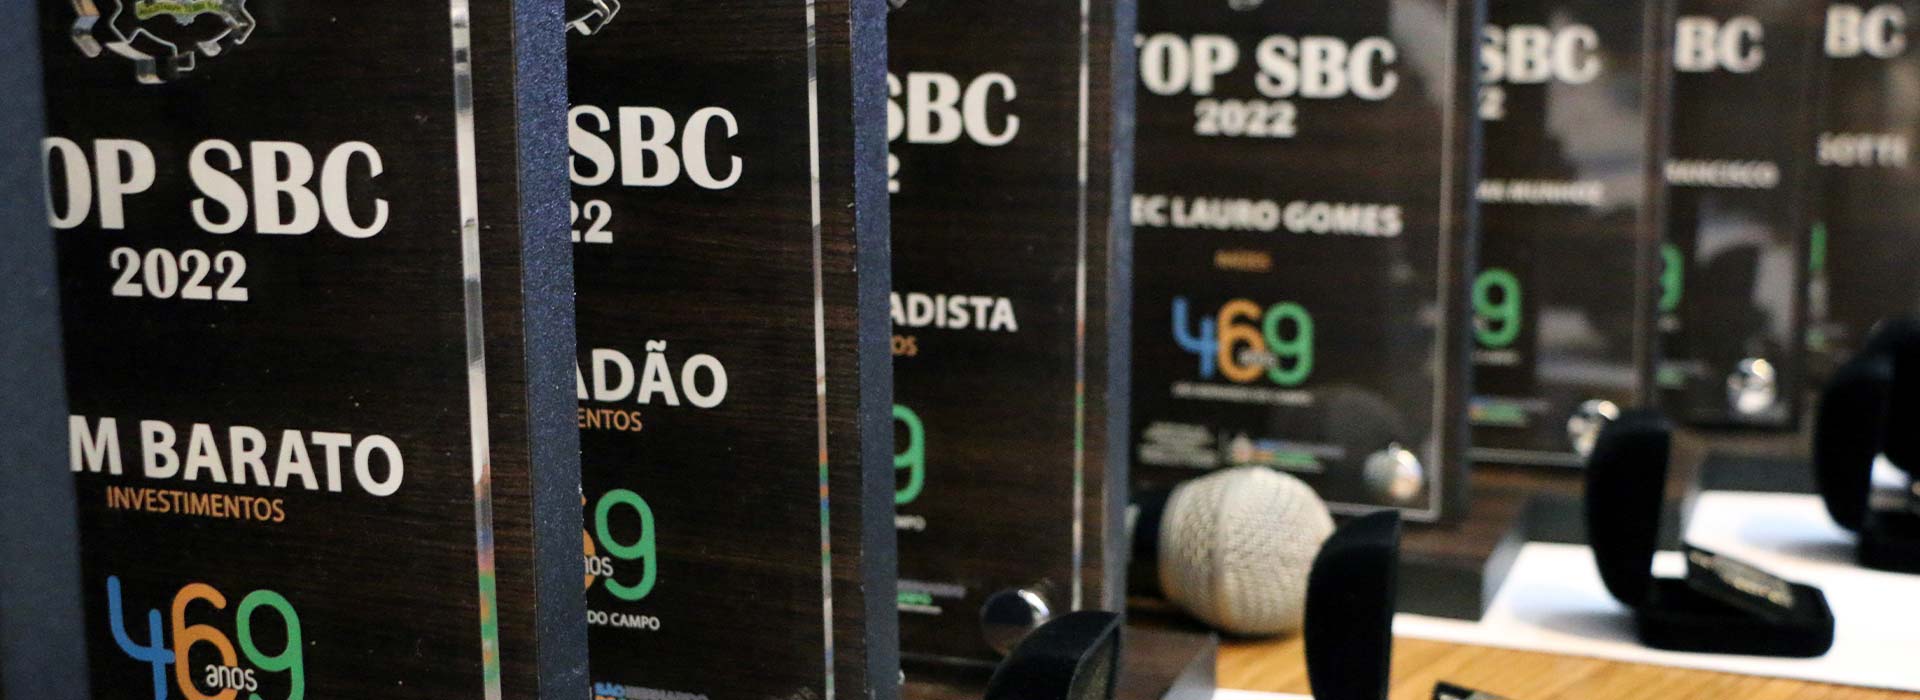 Premios - Top sbc -2021